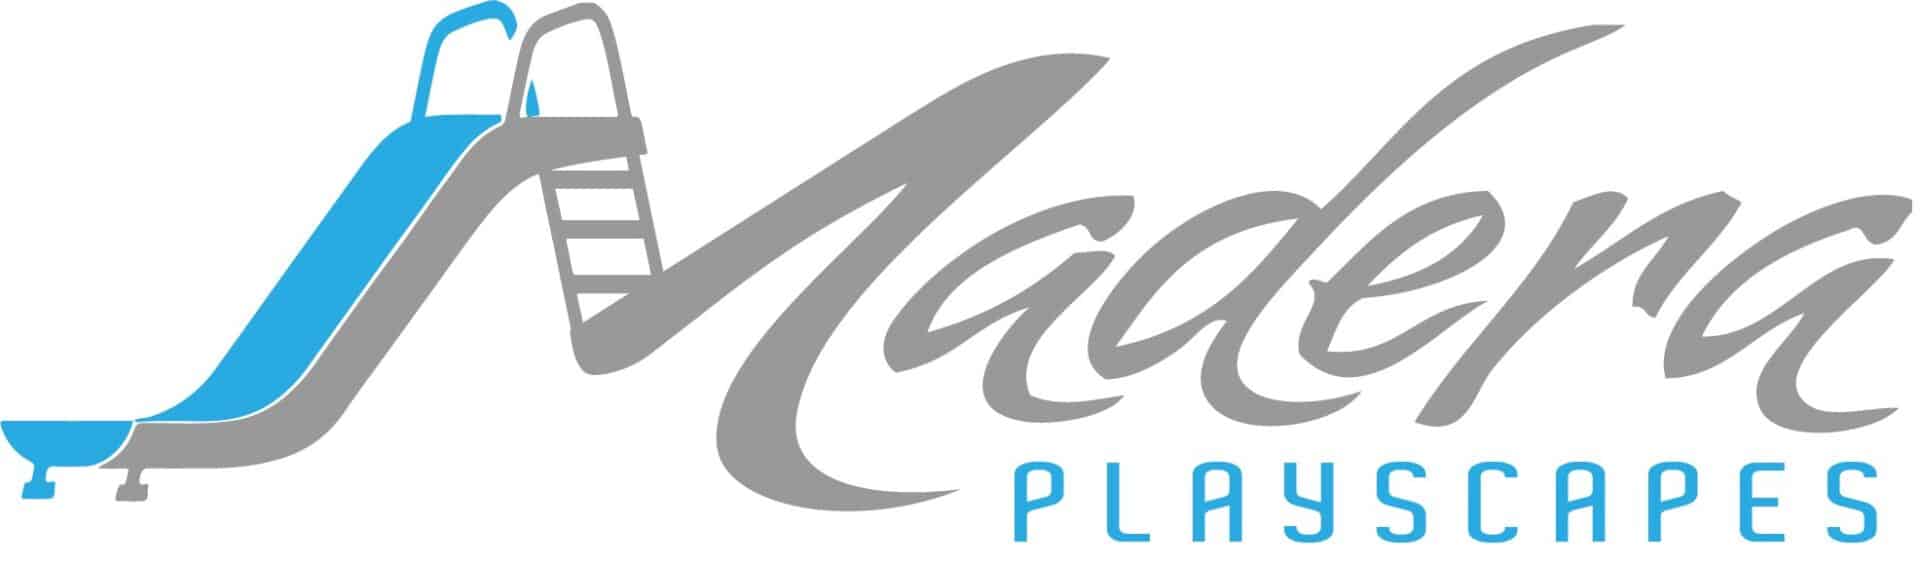 Madera Playscapes logo